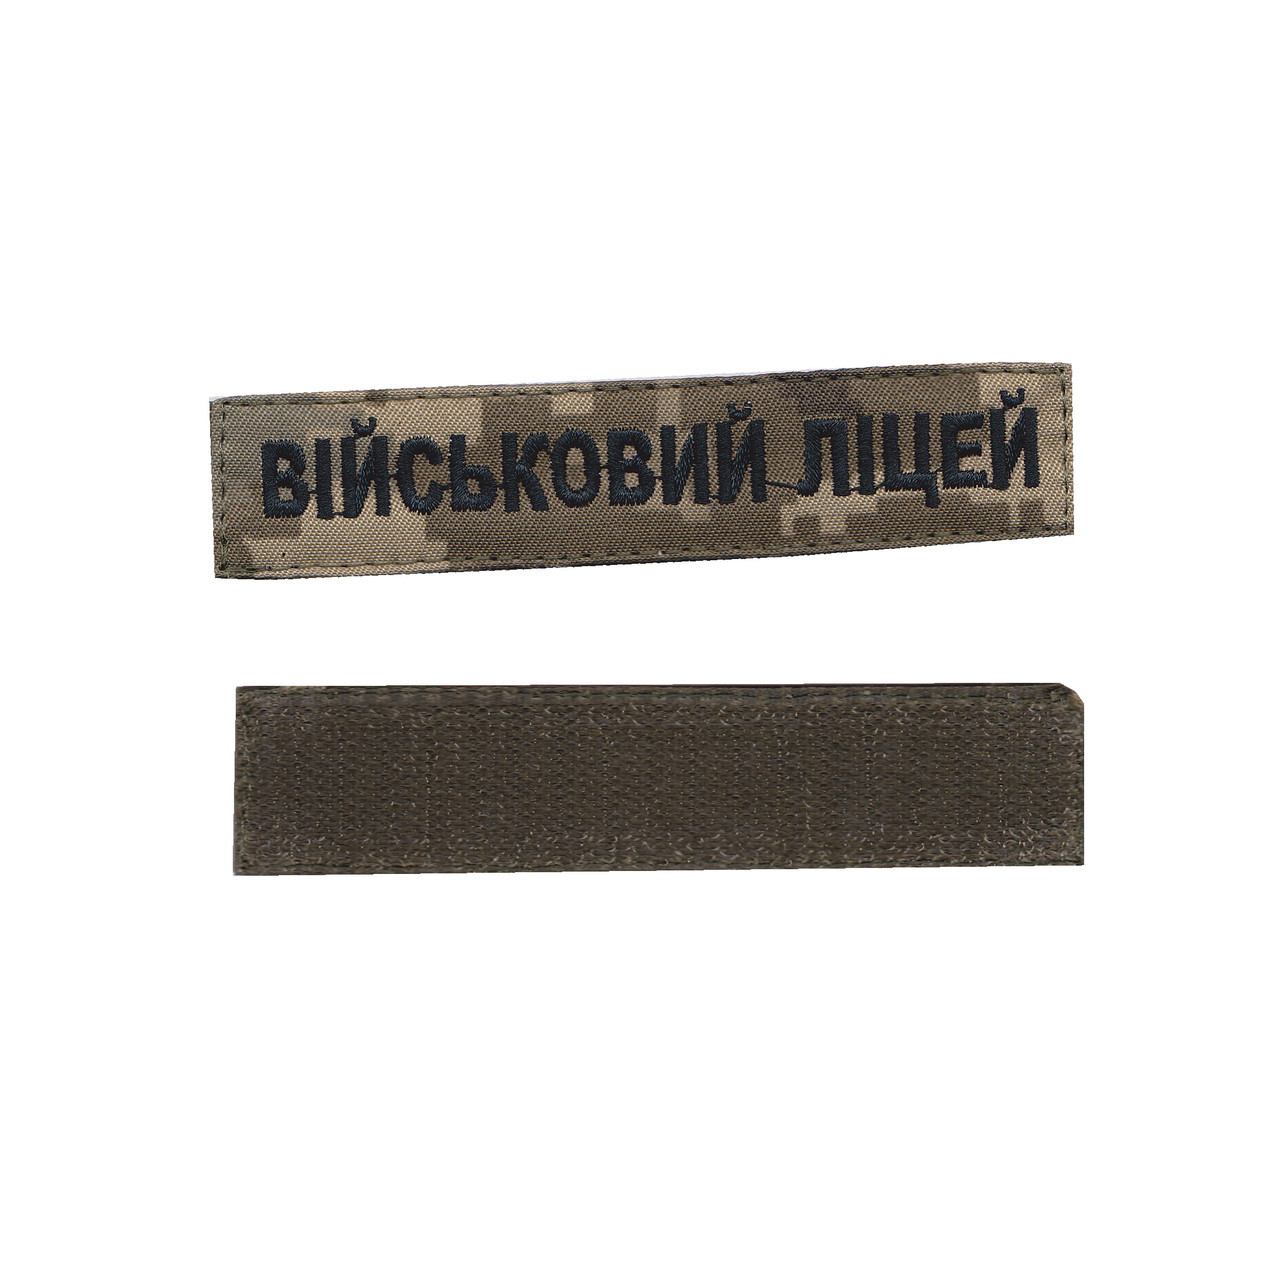 Військовий ліцей, військовий / армійський шеврон ЗСУ, чорний колір на пікселі. 2,8 см * 12,5 см